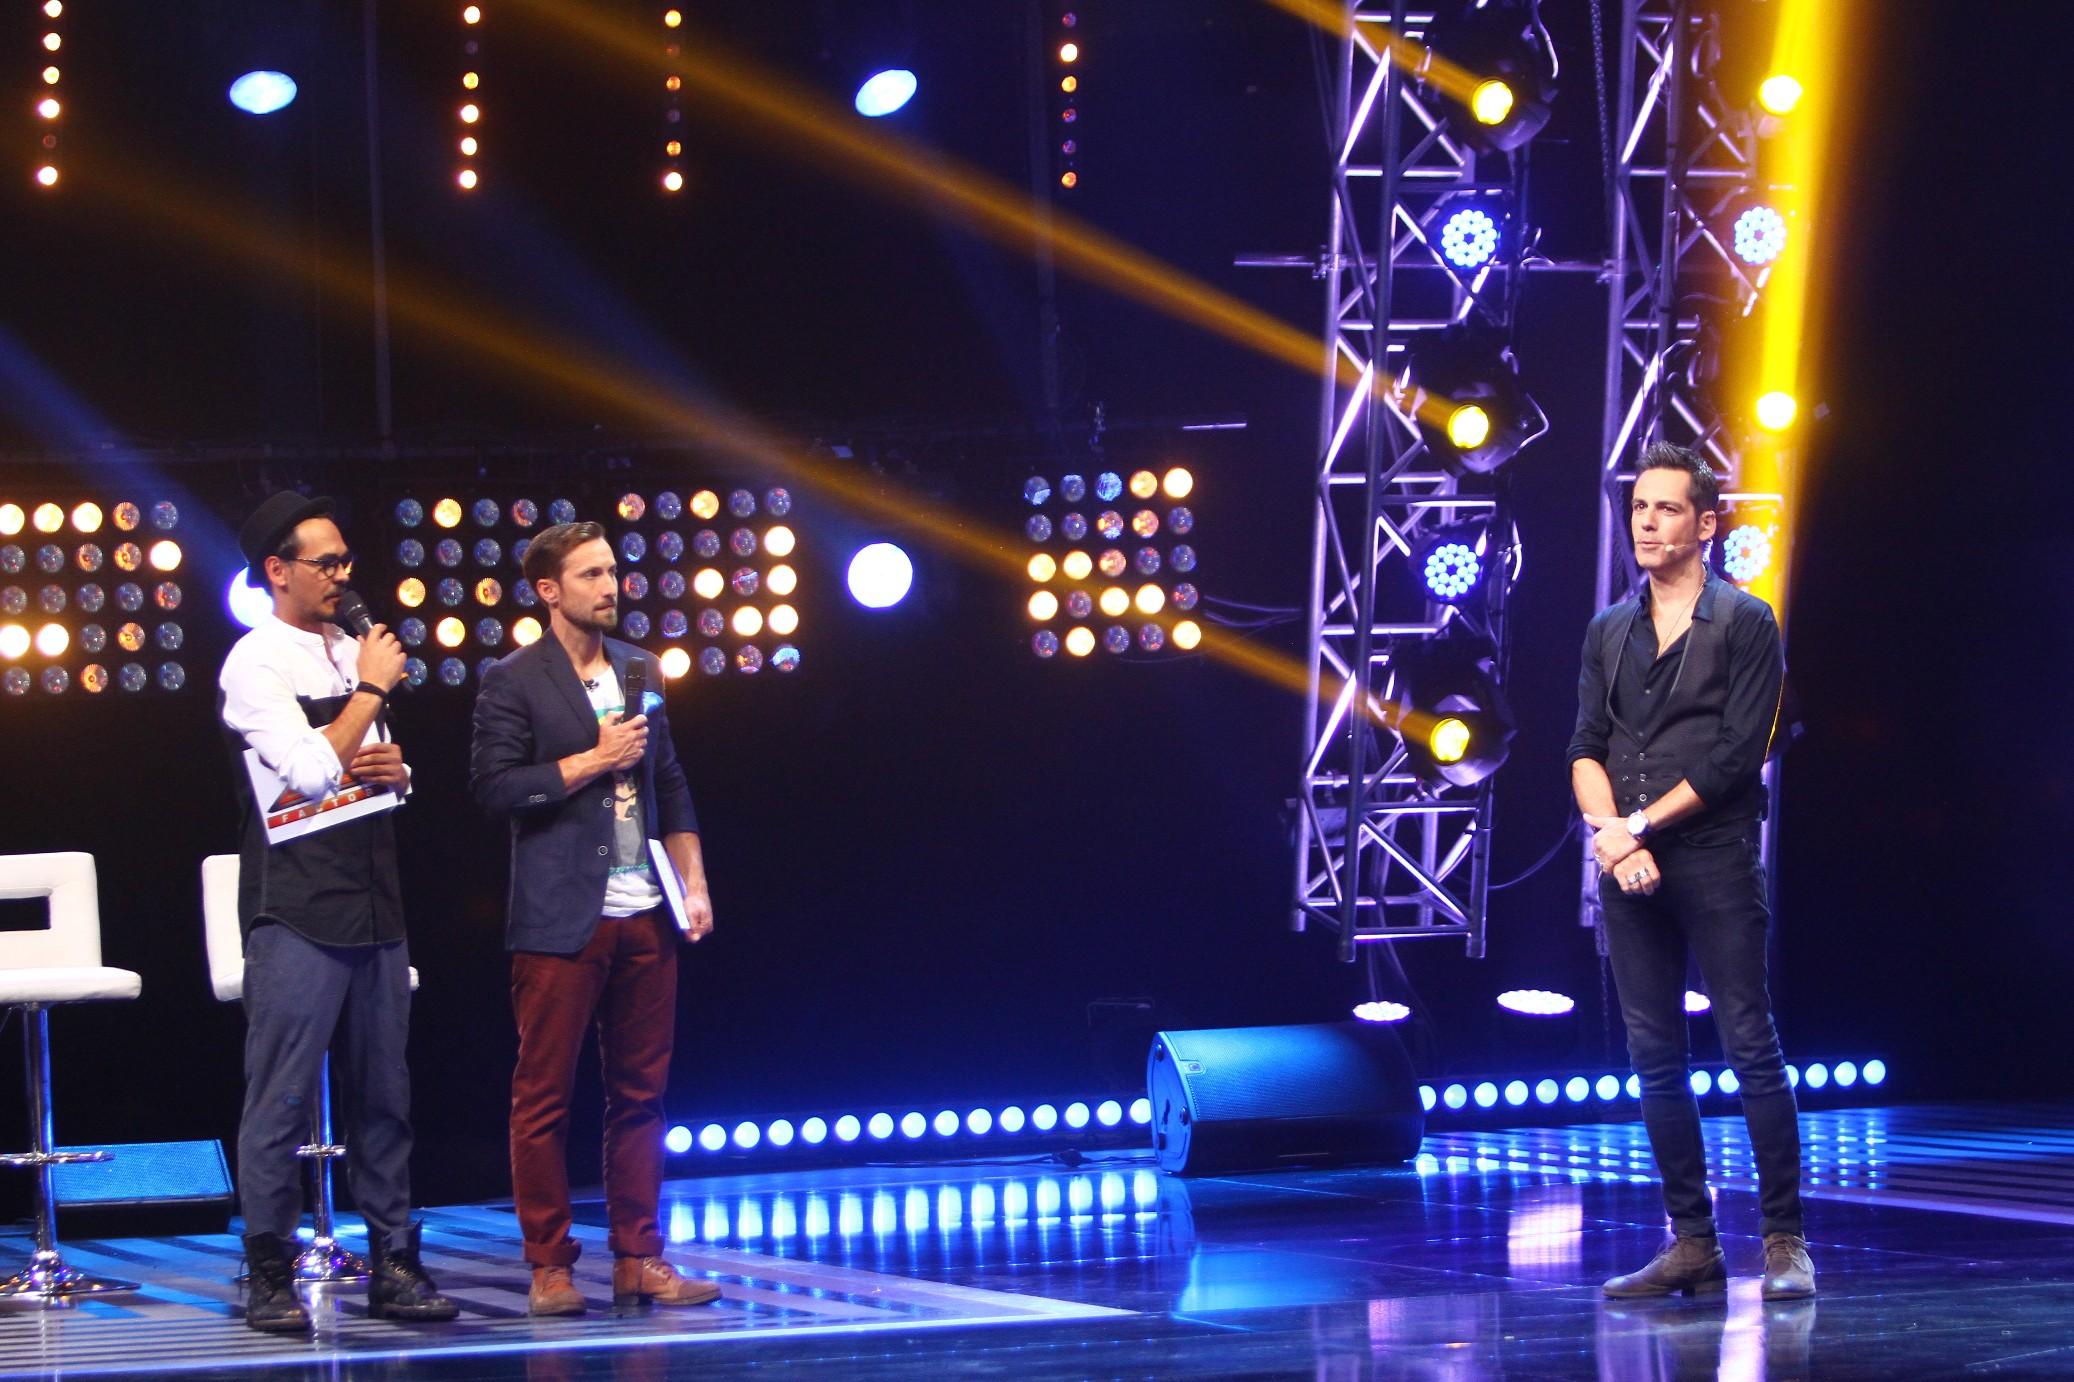 Vineri, 27 noiembrie, de la 20.30 pe Antena 1,  Ștefan Bănică deschide seria edițiilor de Bootcamp la X Factor